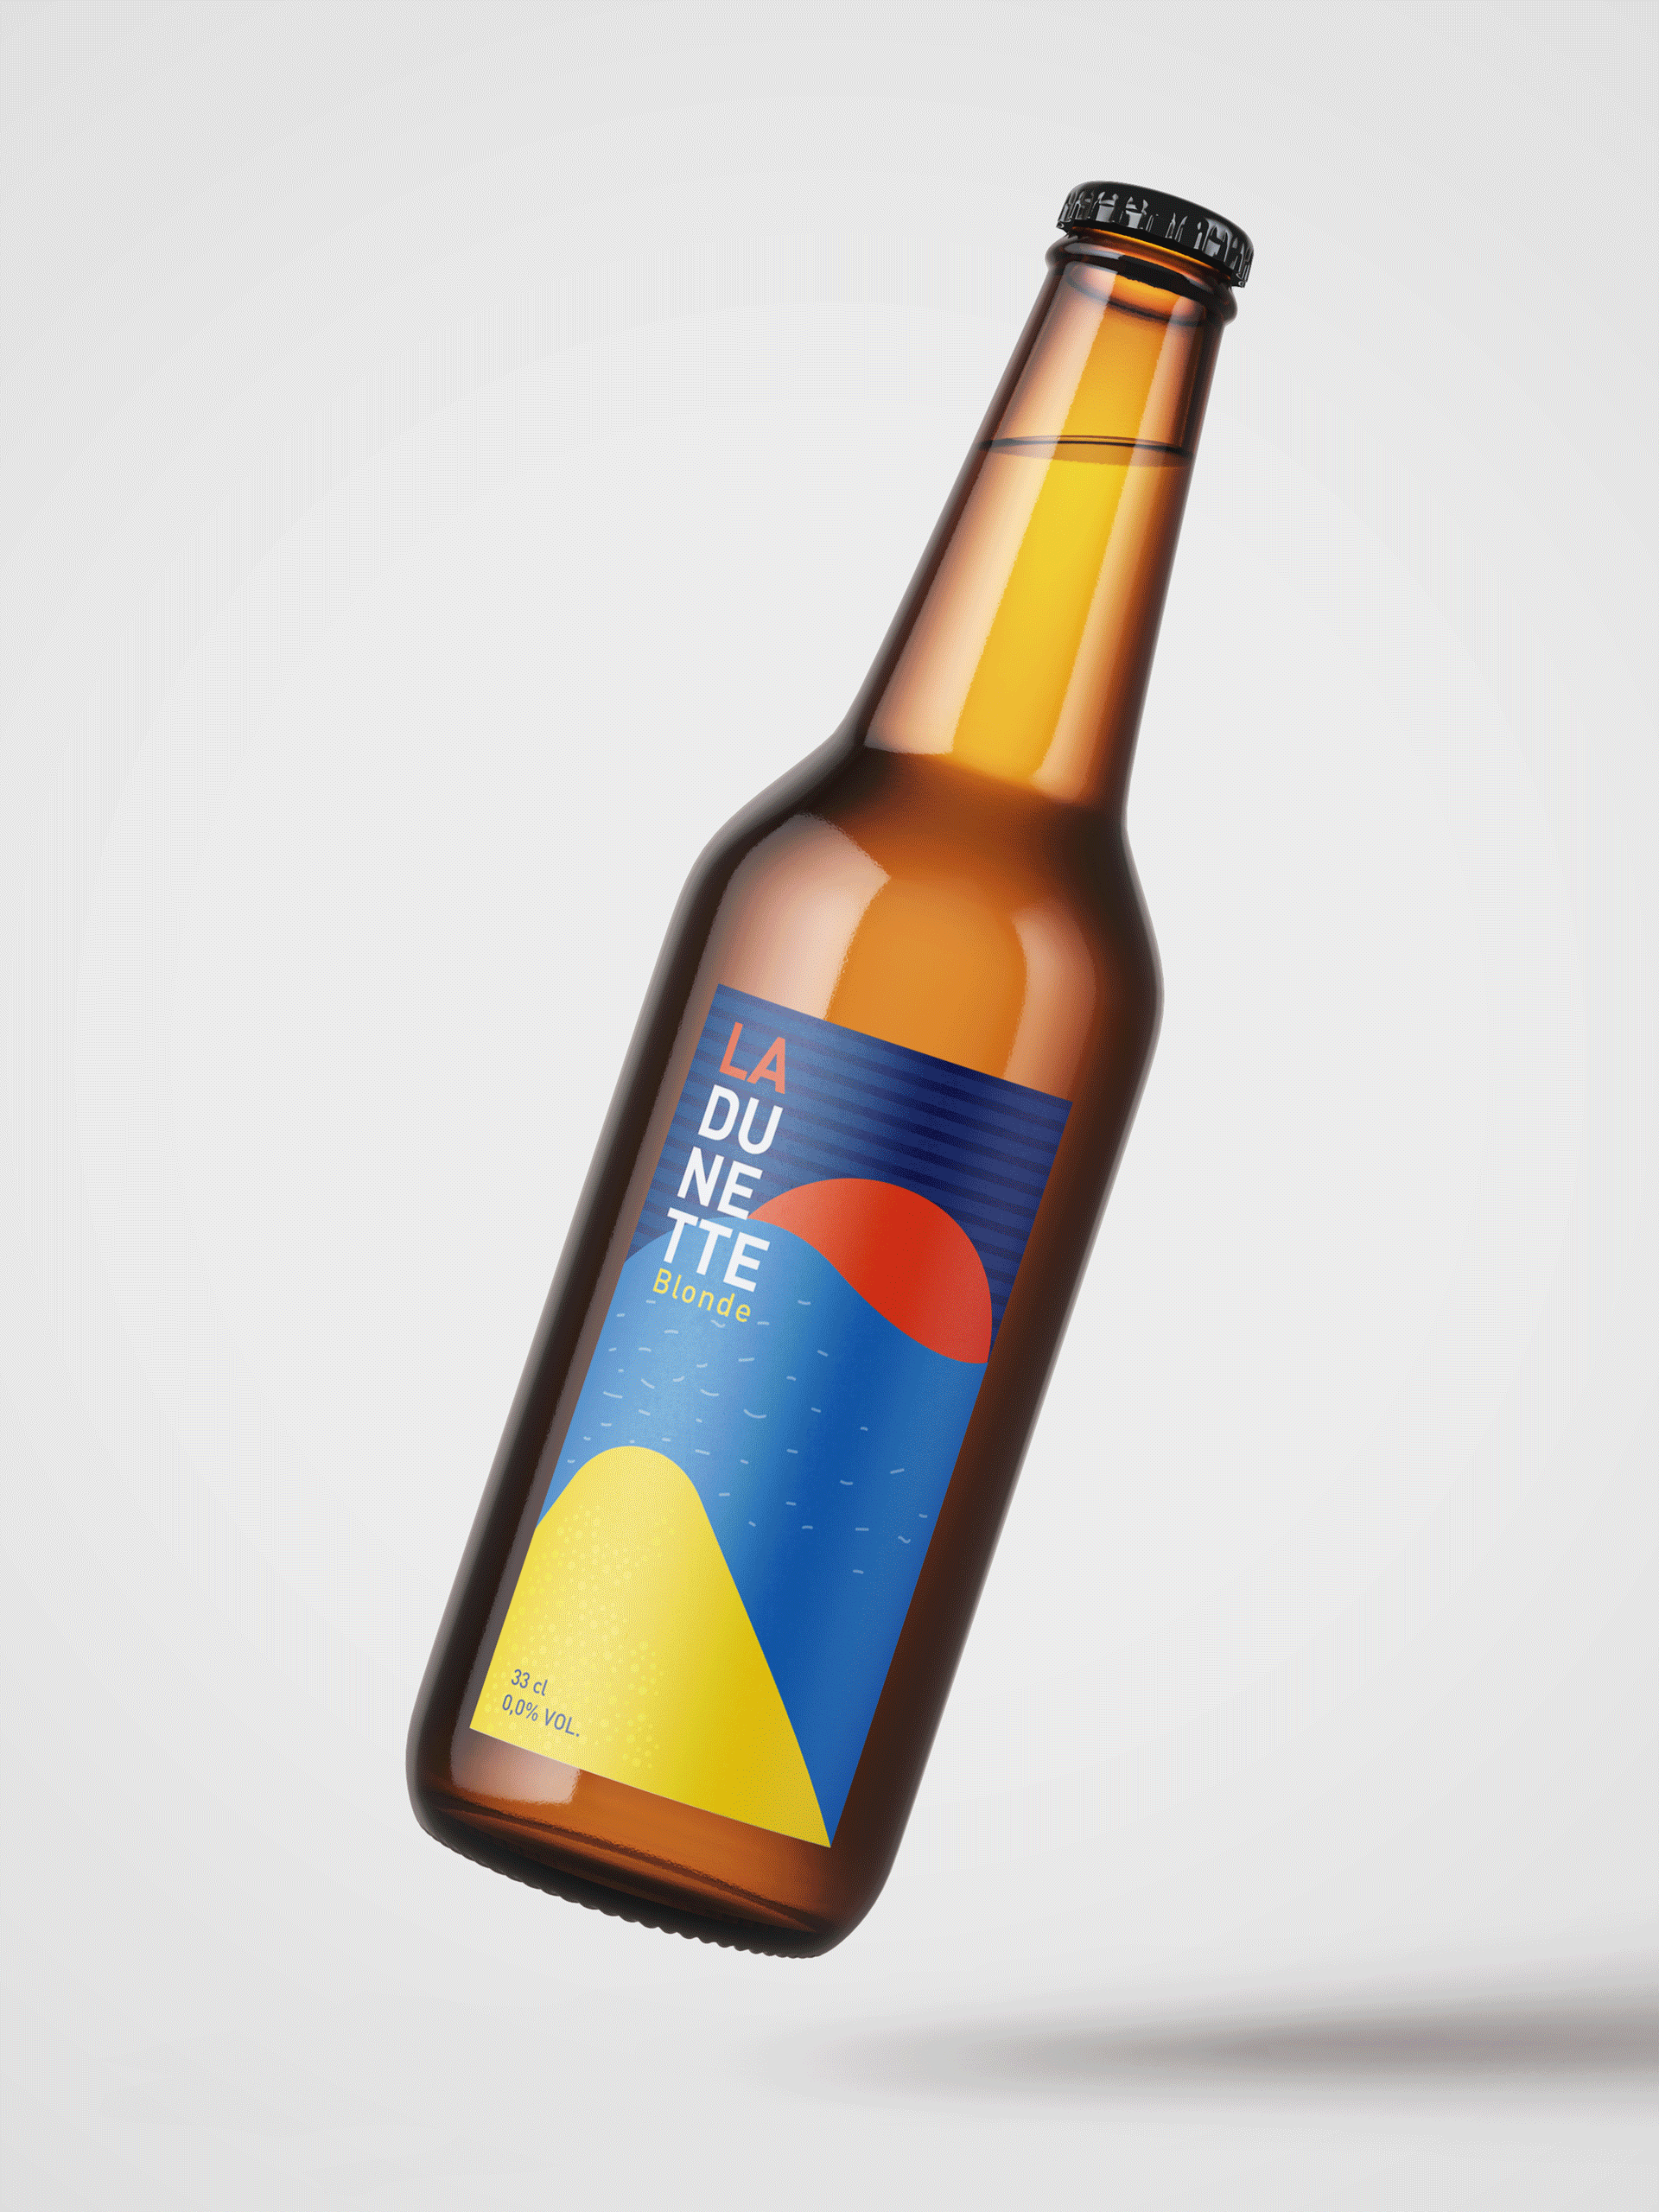 Etiquettes de bières – Concours Bernard Magrez